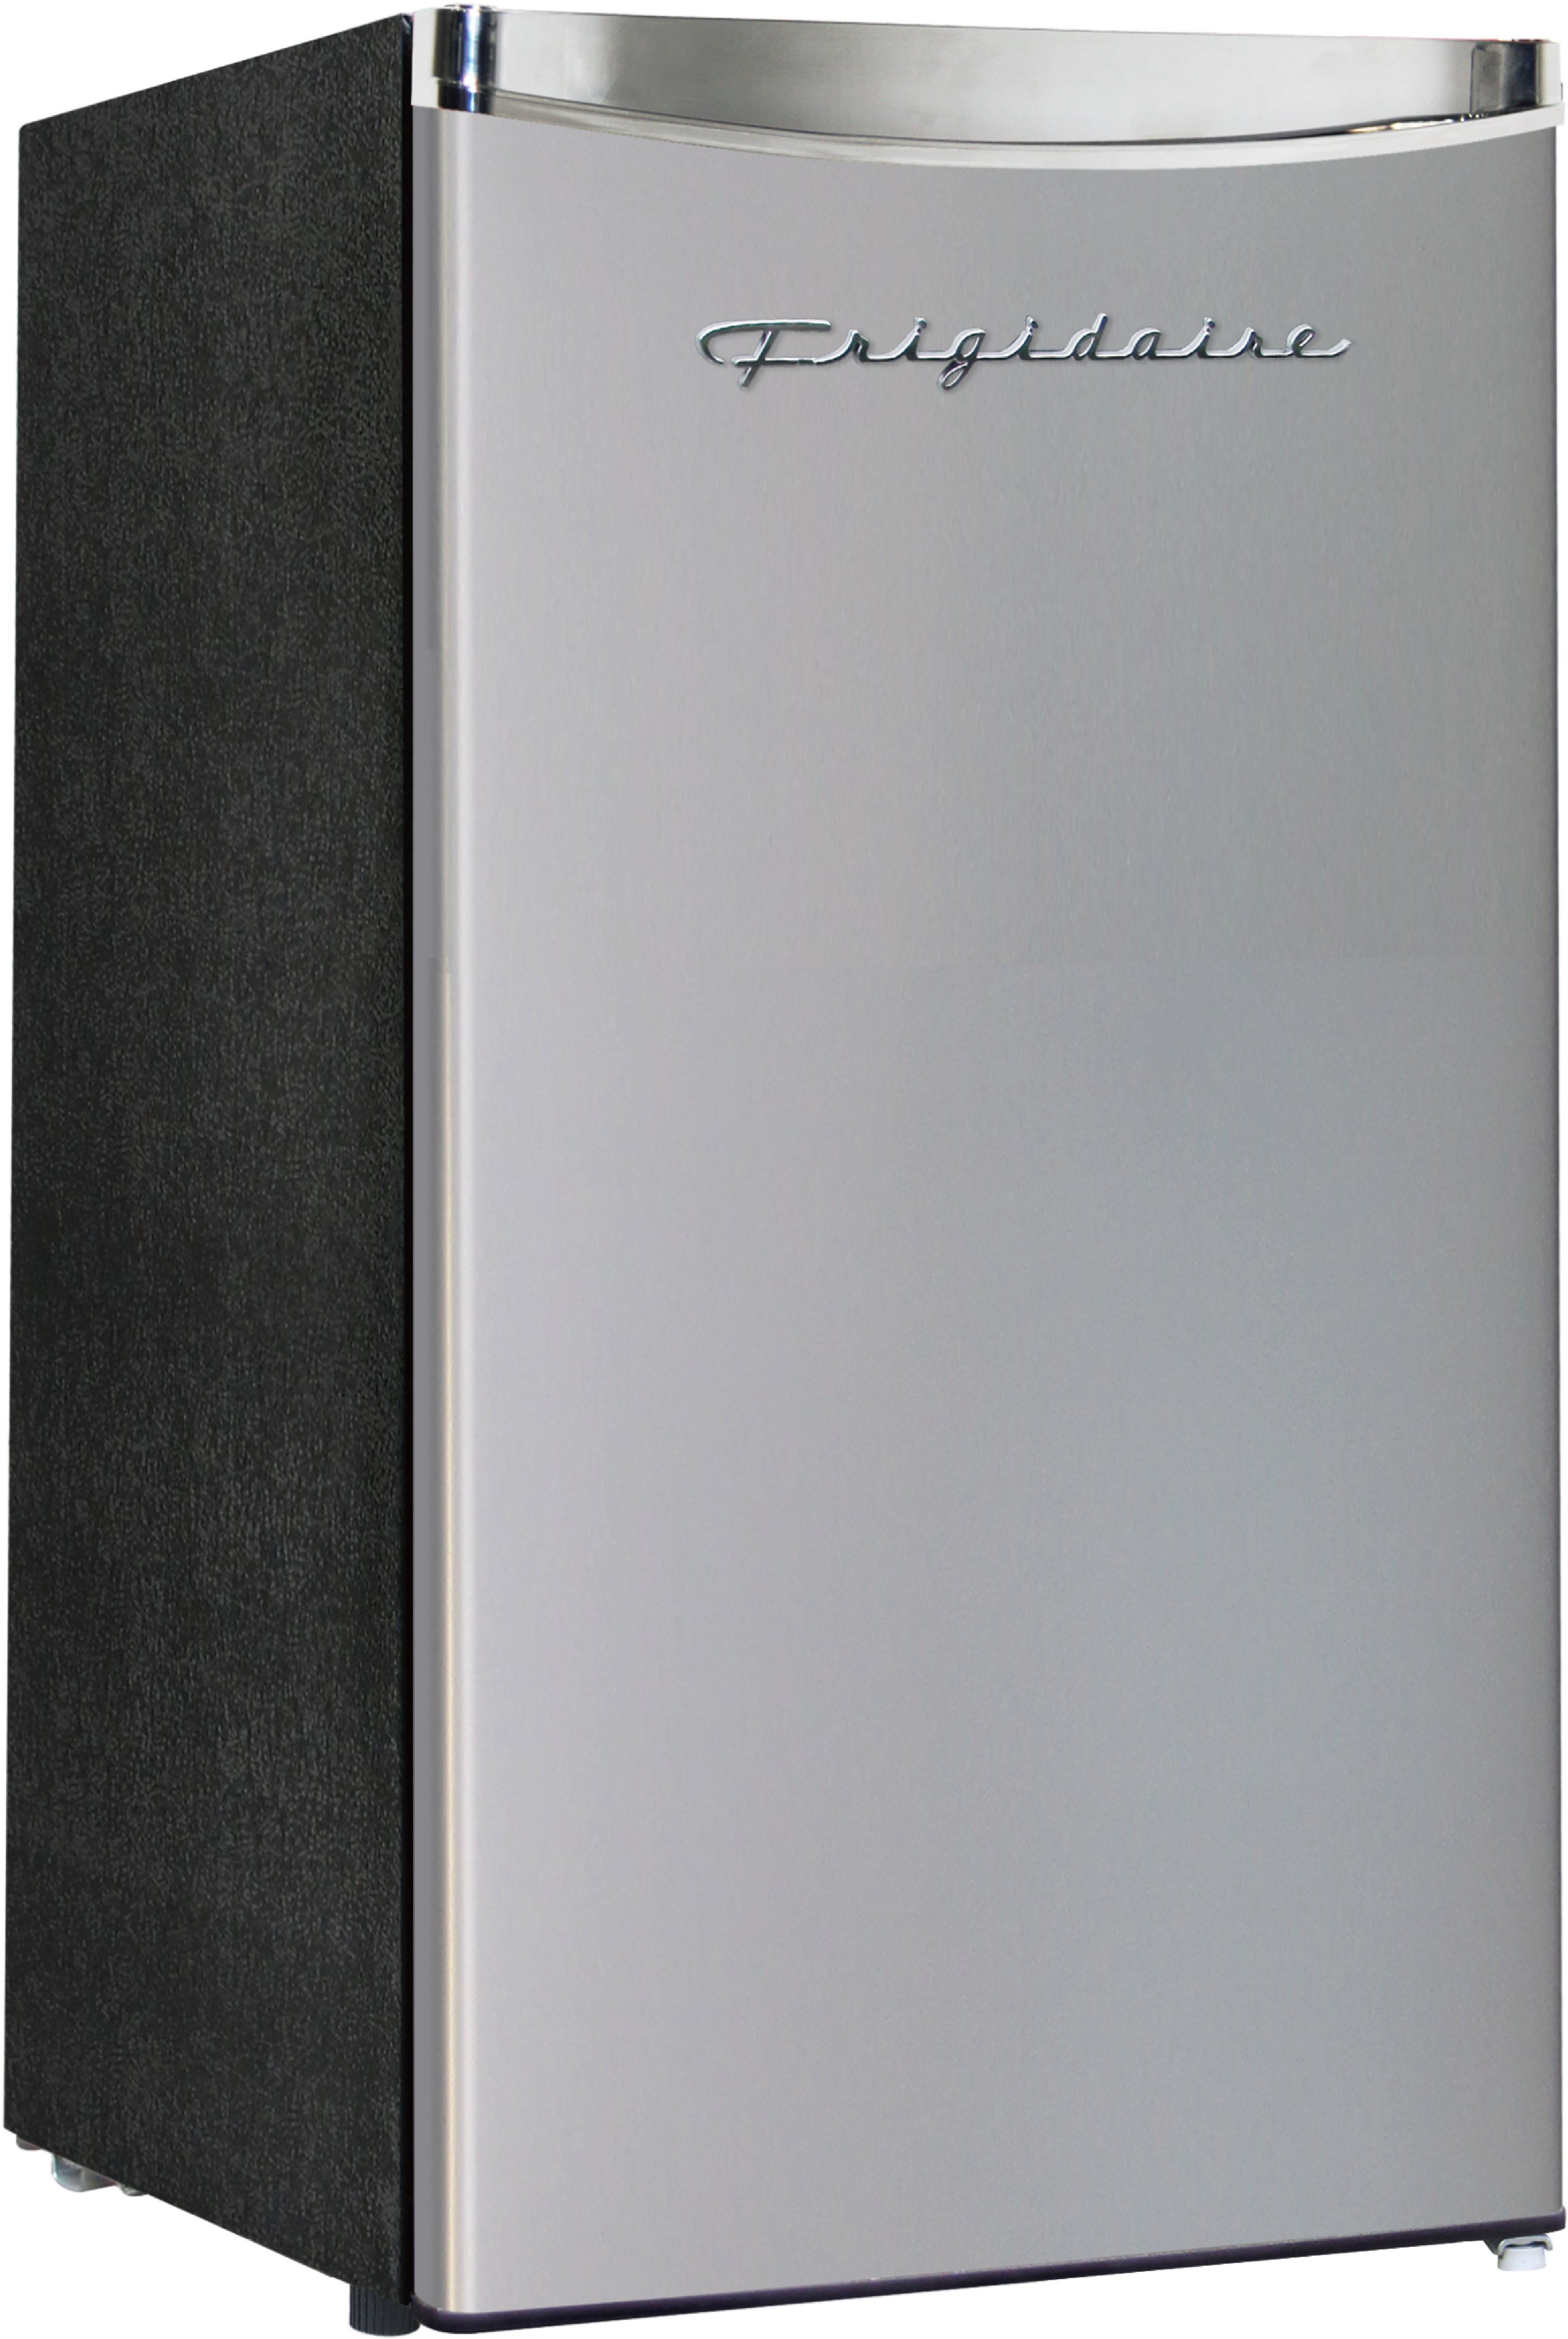 Angle View: Frigidaire 3.2 Cu. ft. Compact Refrigerator Chrome Trim EFR323, Platinum